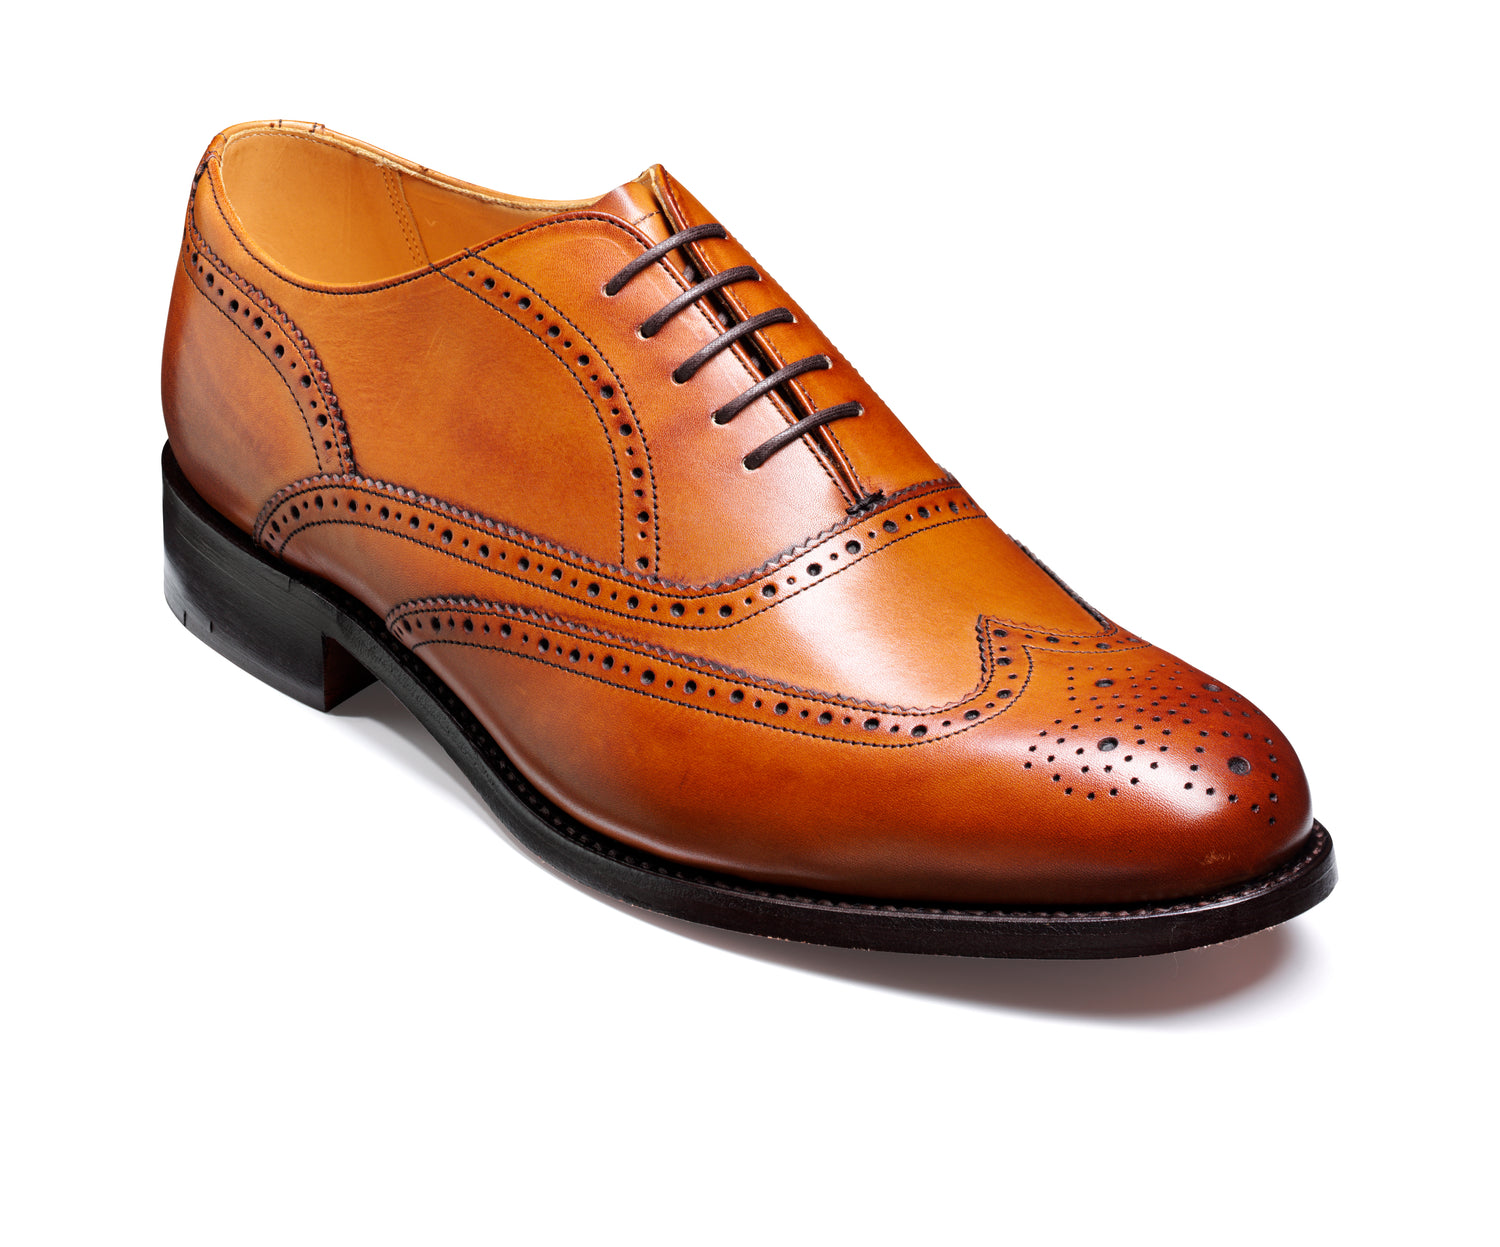 Newport Leather Dress Shoe - Cedar Calf